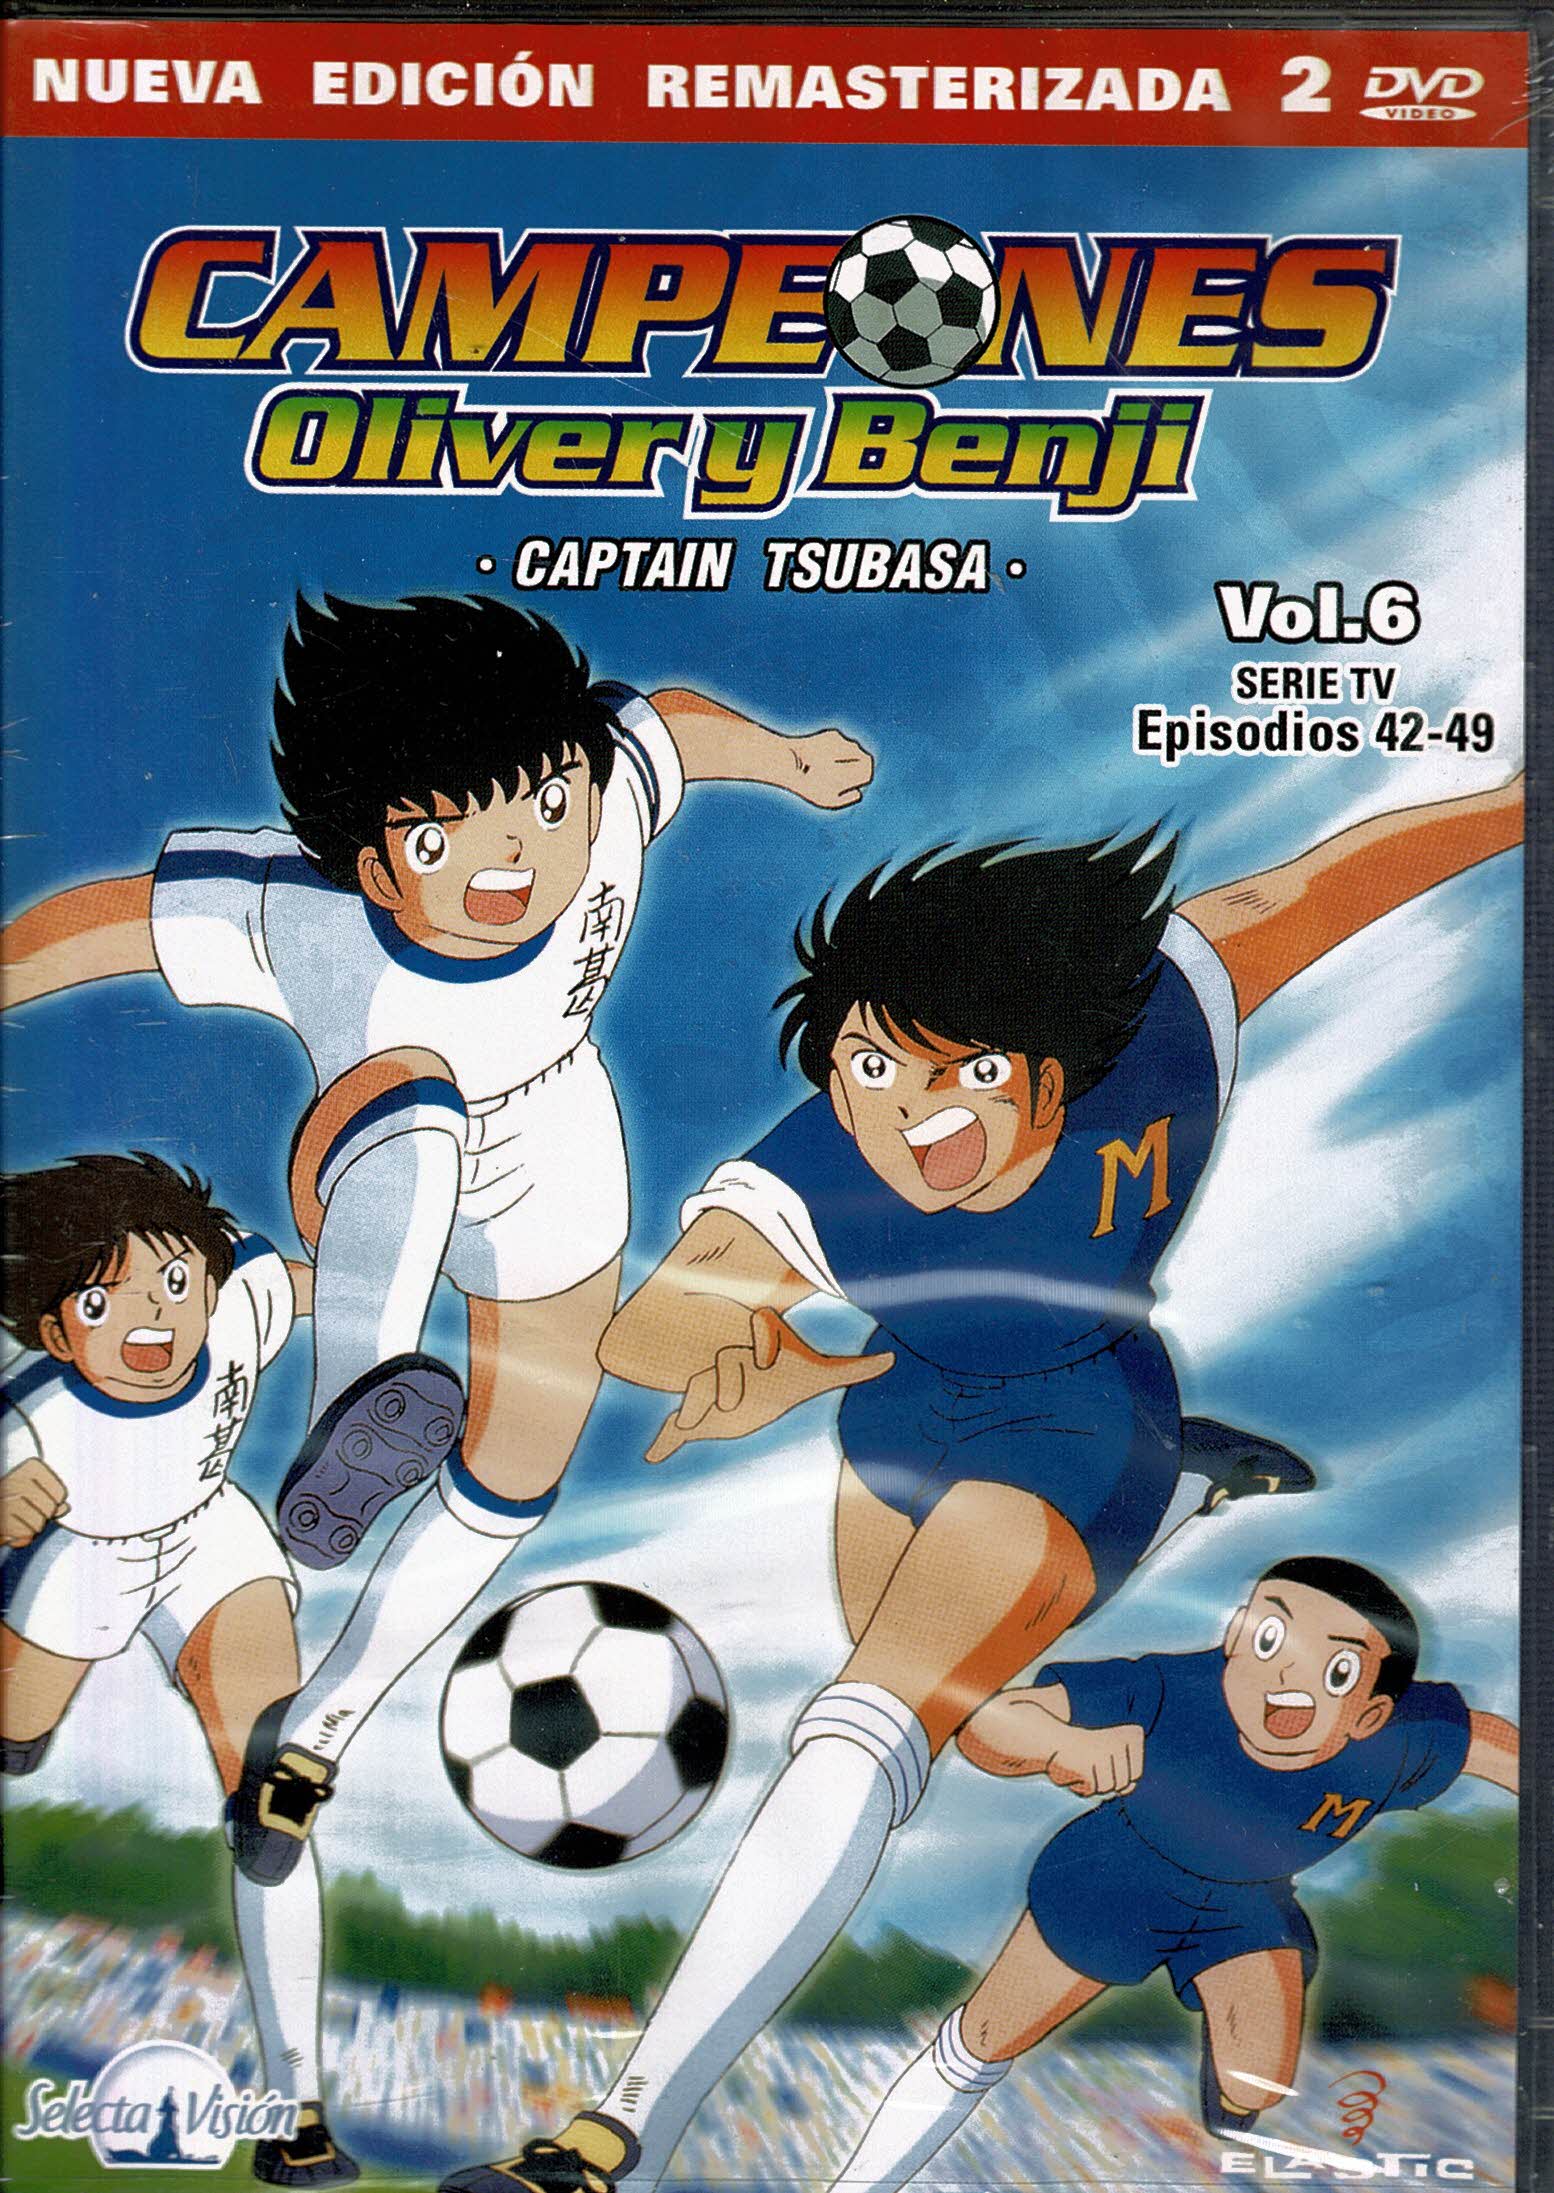 Campeones Oliver y Benji *captain tsubasa* Vol 6 Episodios 42-49